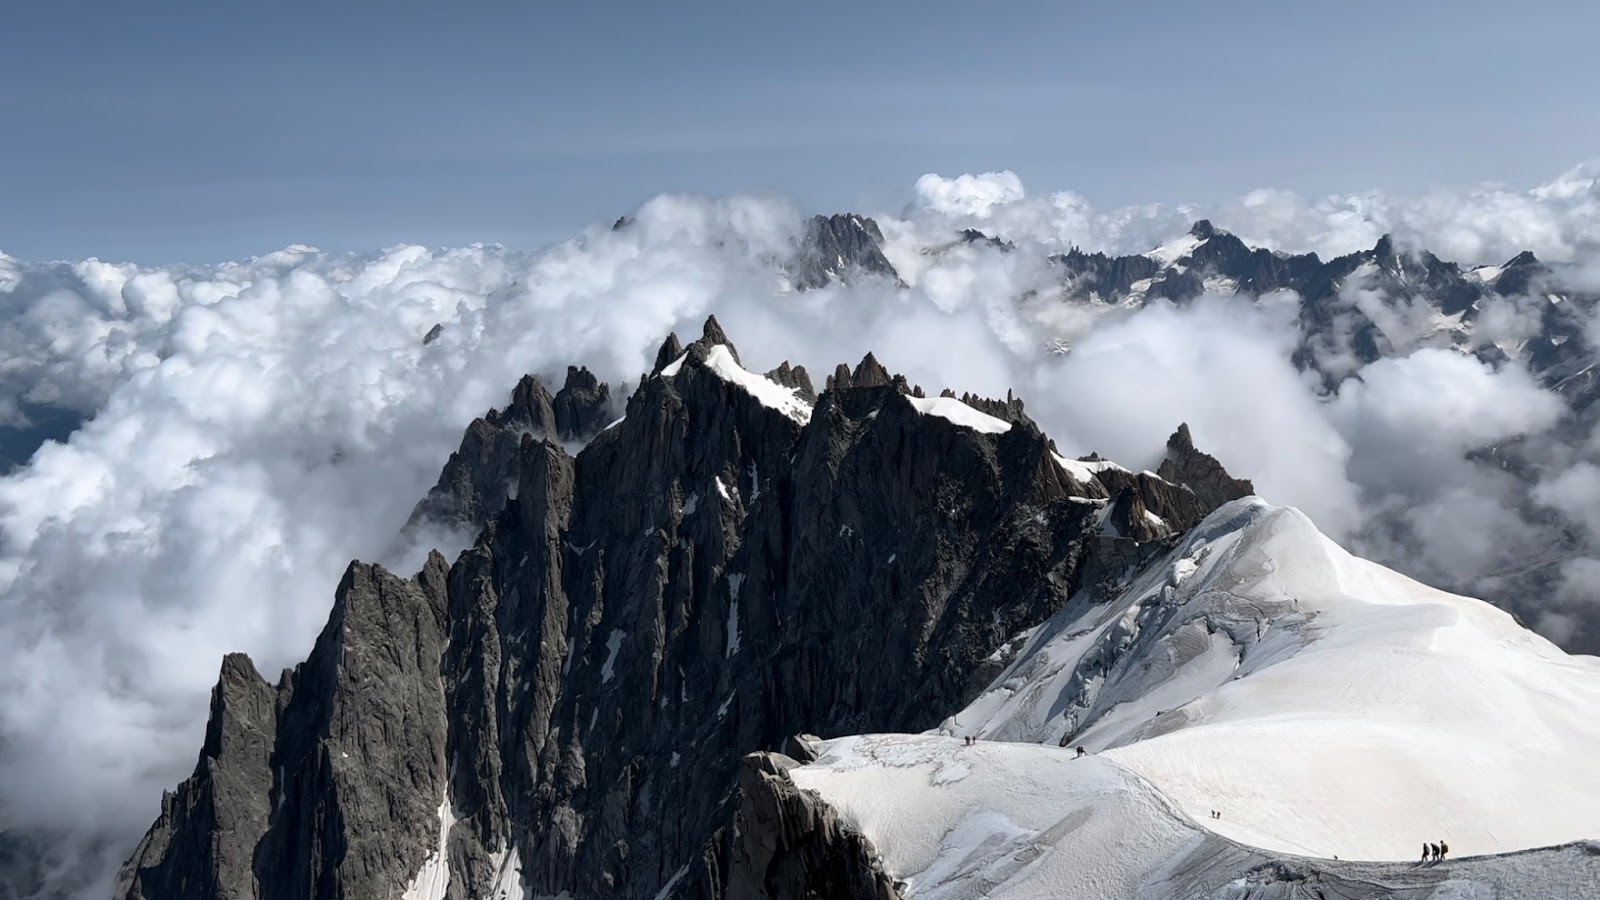 En bas à droite, des alpinistes sur le point de descendre le Mont Blanc